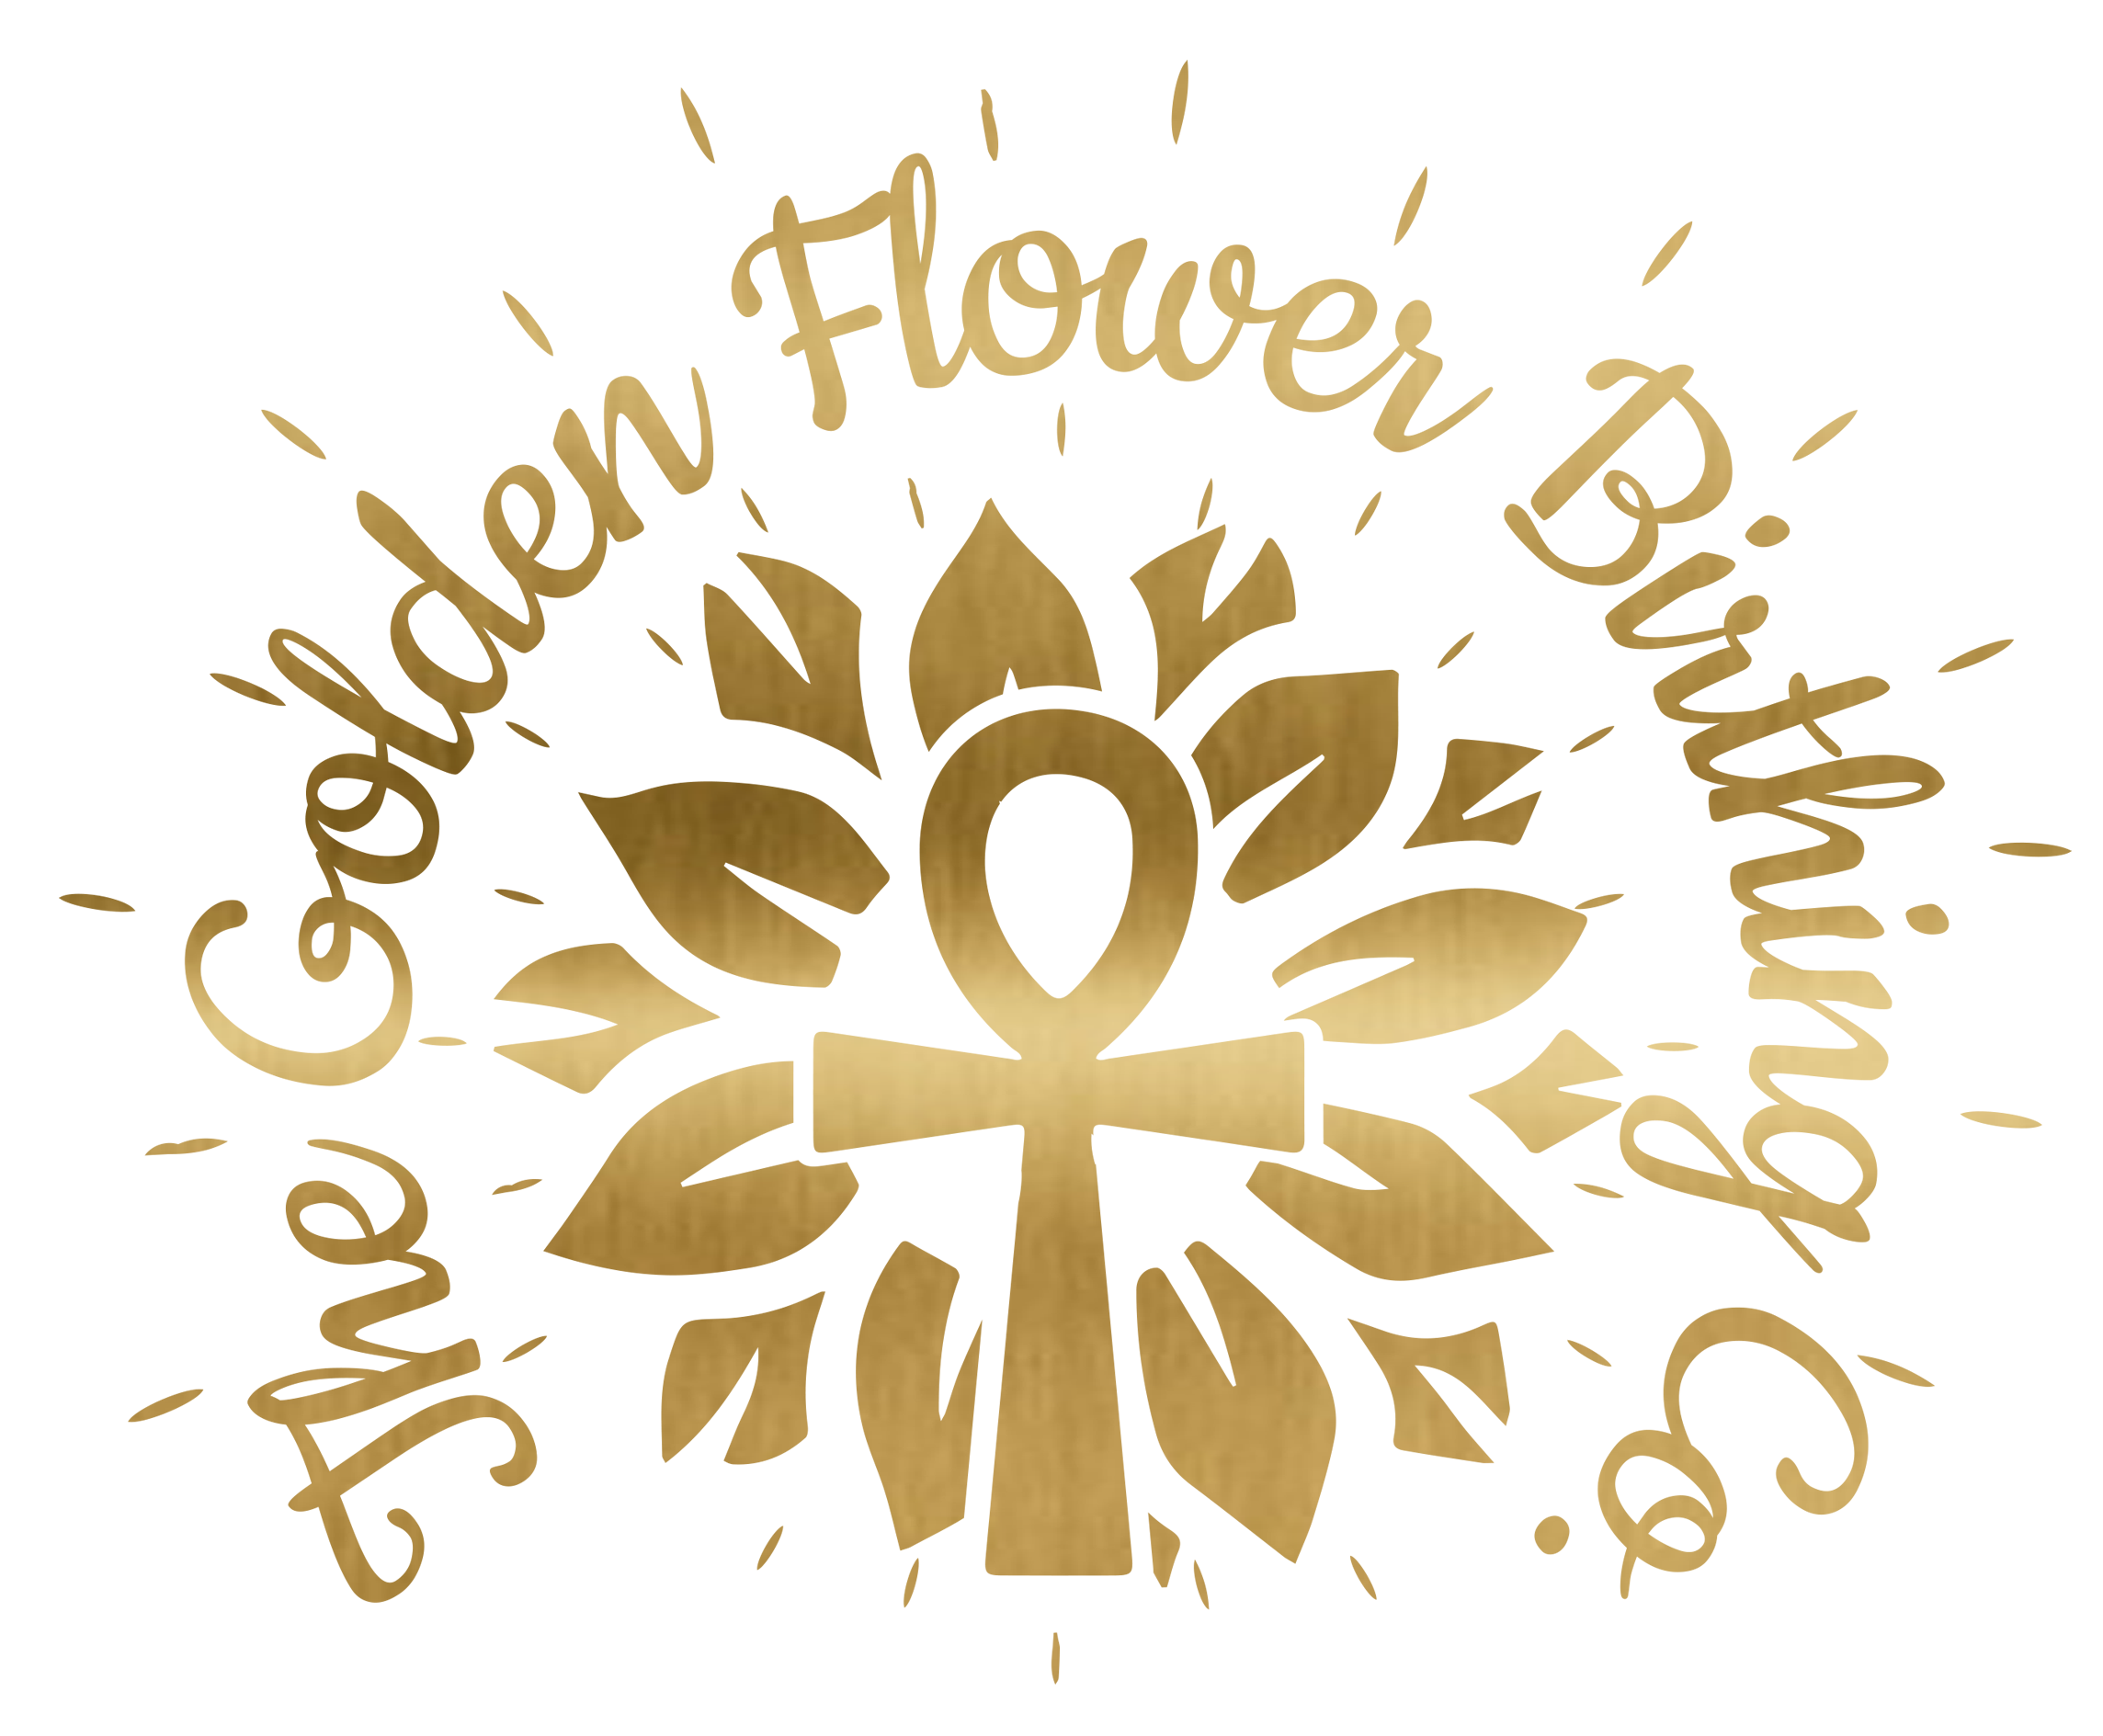 The Golden Flower Birthing Co.